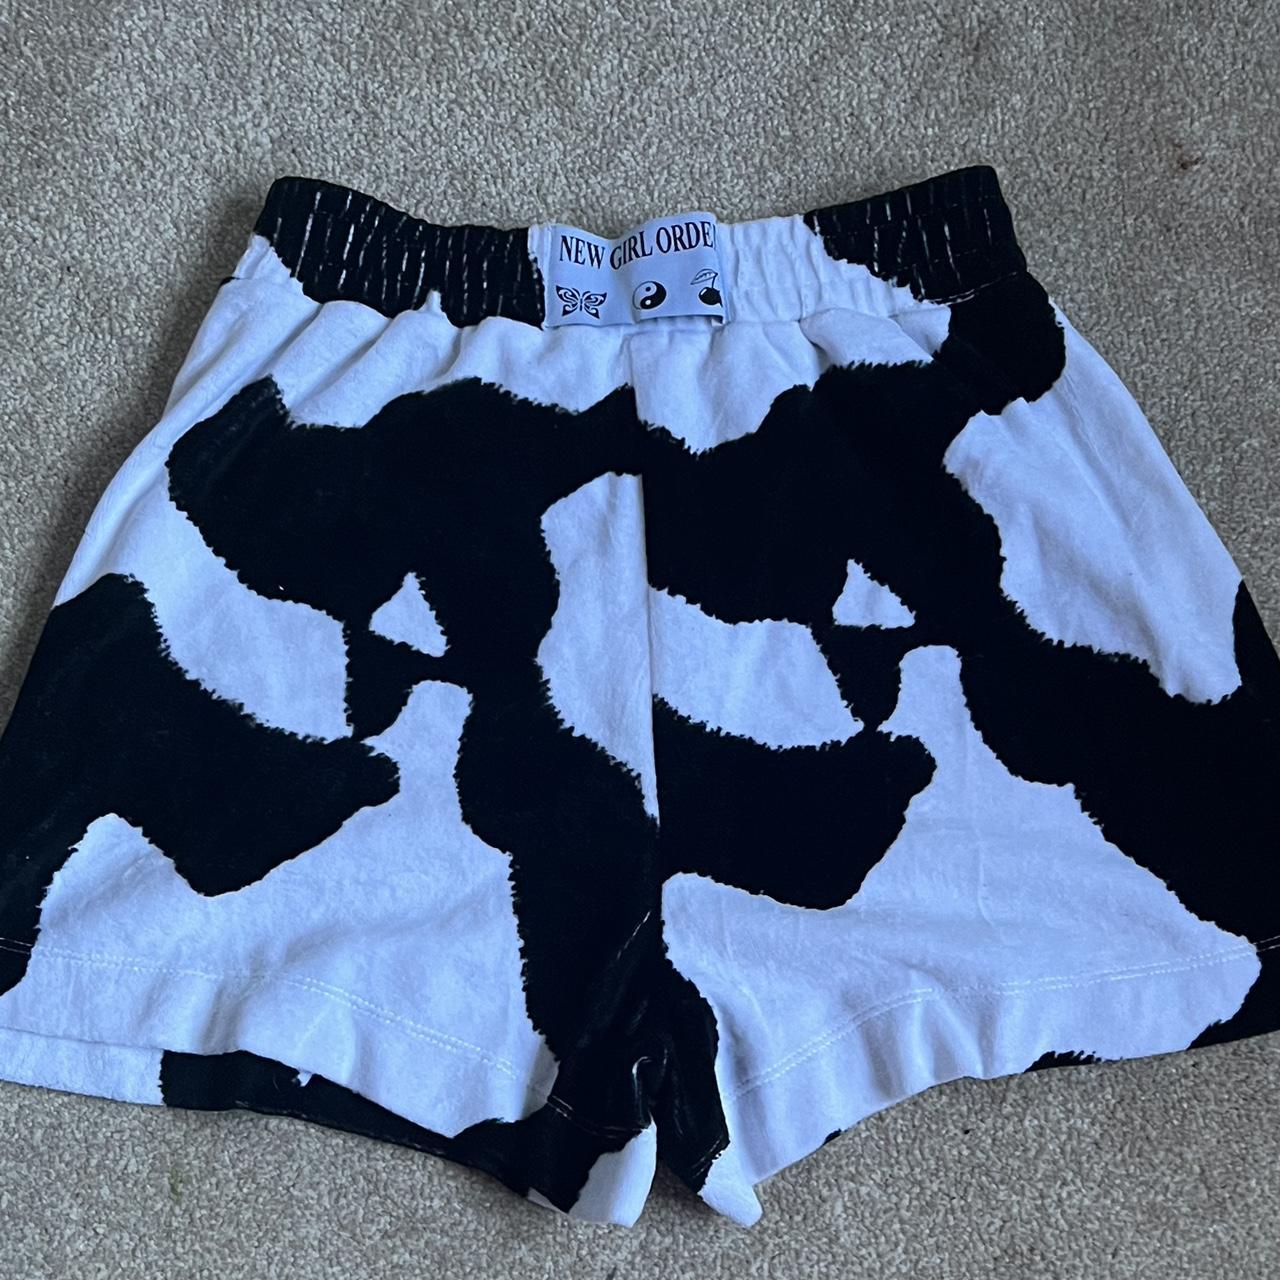 New Girl Order Women's Black and White Shorts | Depop